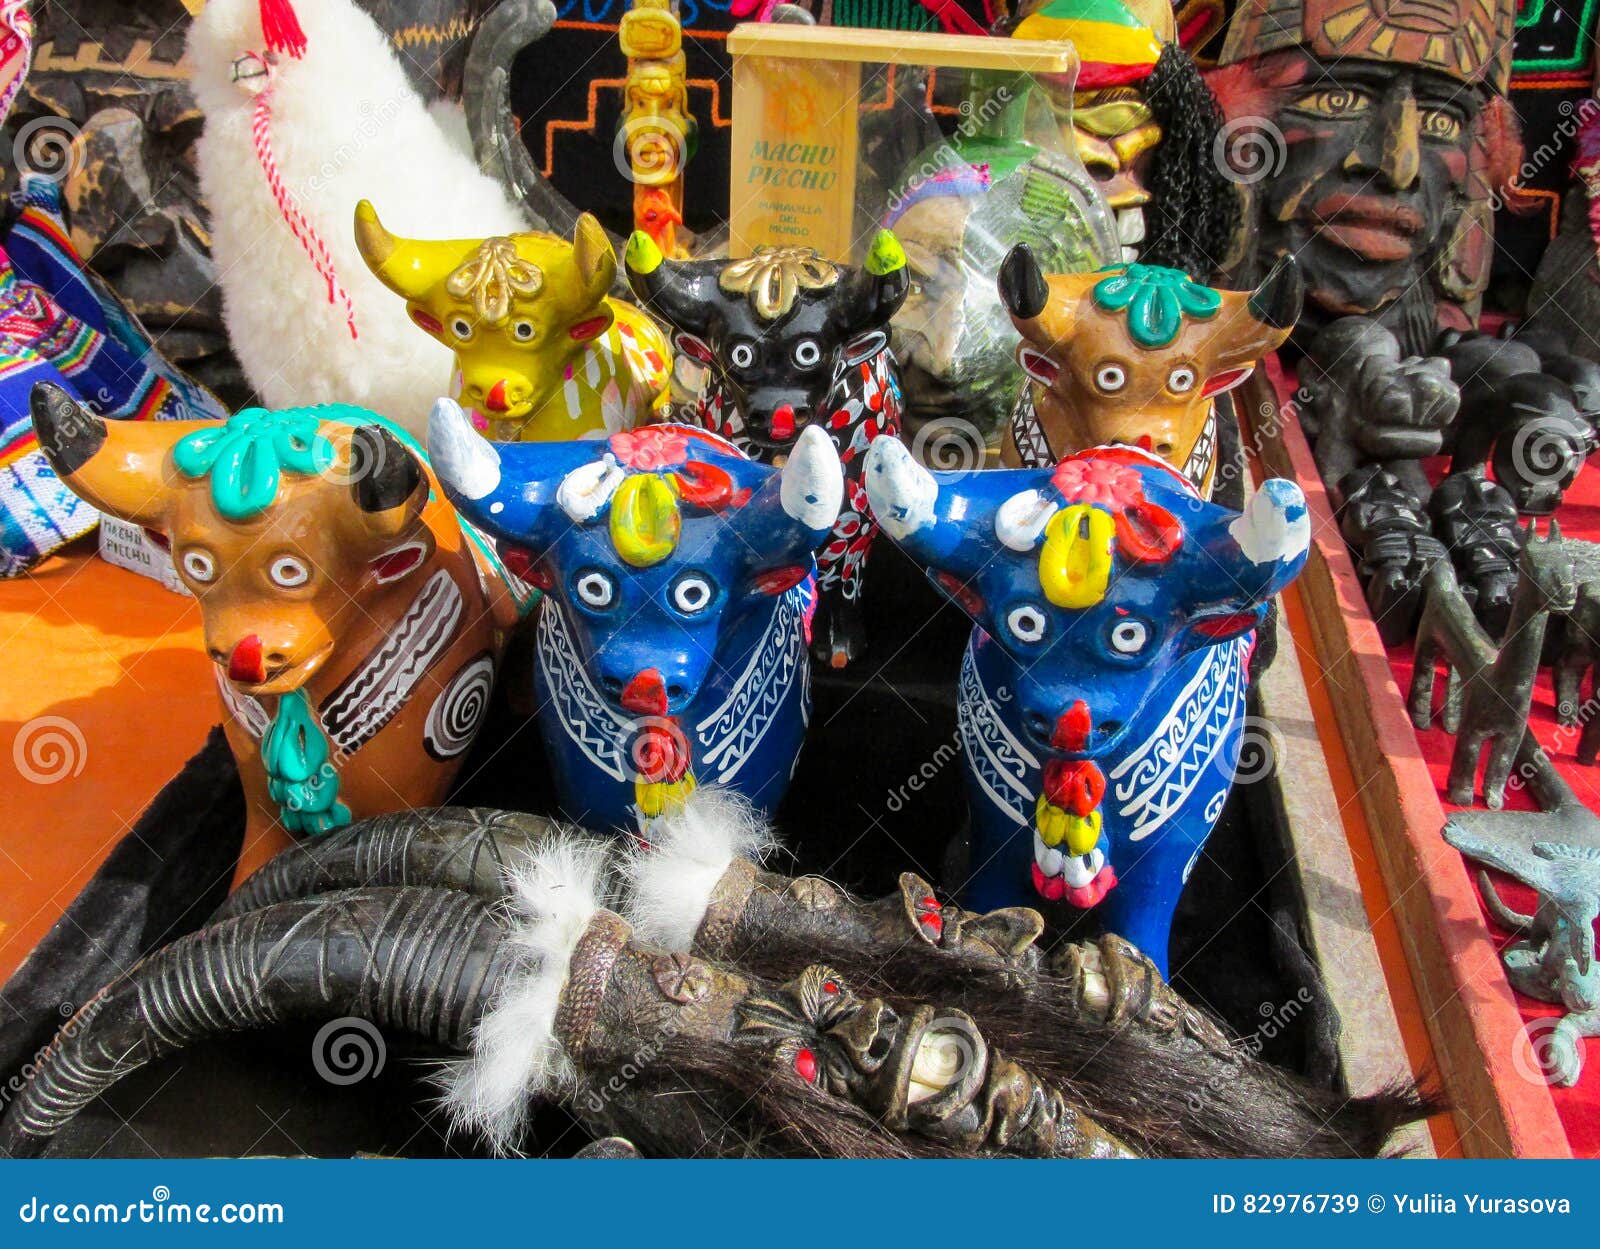 animal idols at mercado de las brujas in bolivia